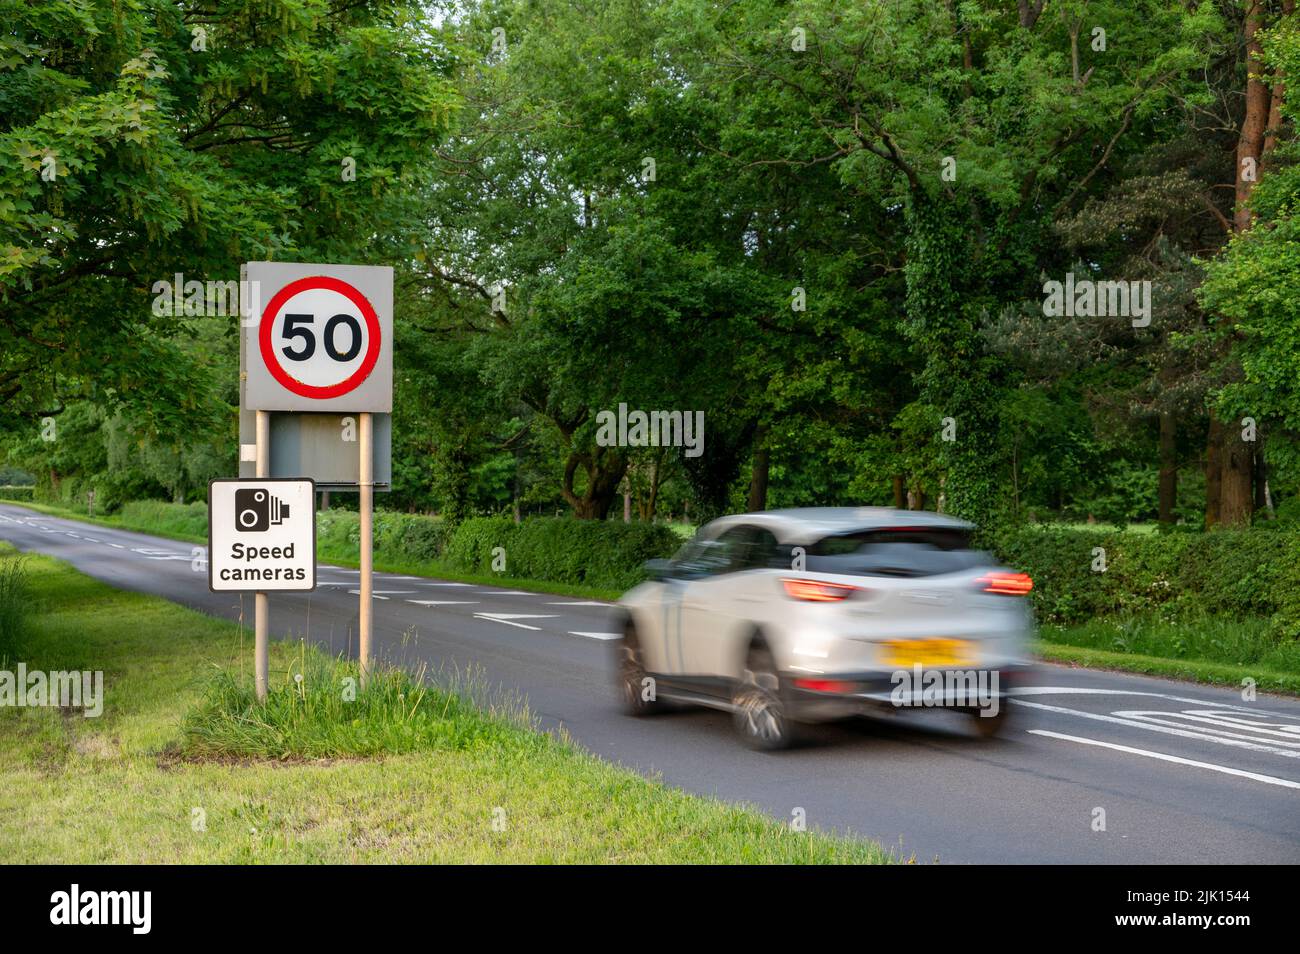 Véhicule en direction de 50mph et panneaux de radars sur une route de Cheshire, Cheshire, Angleterre, Royaume-Uni, Europe Banque D'Images